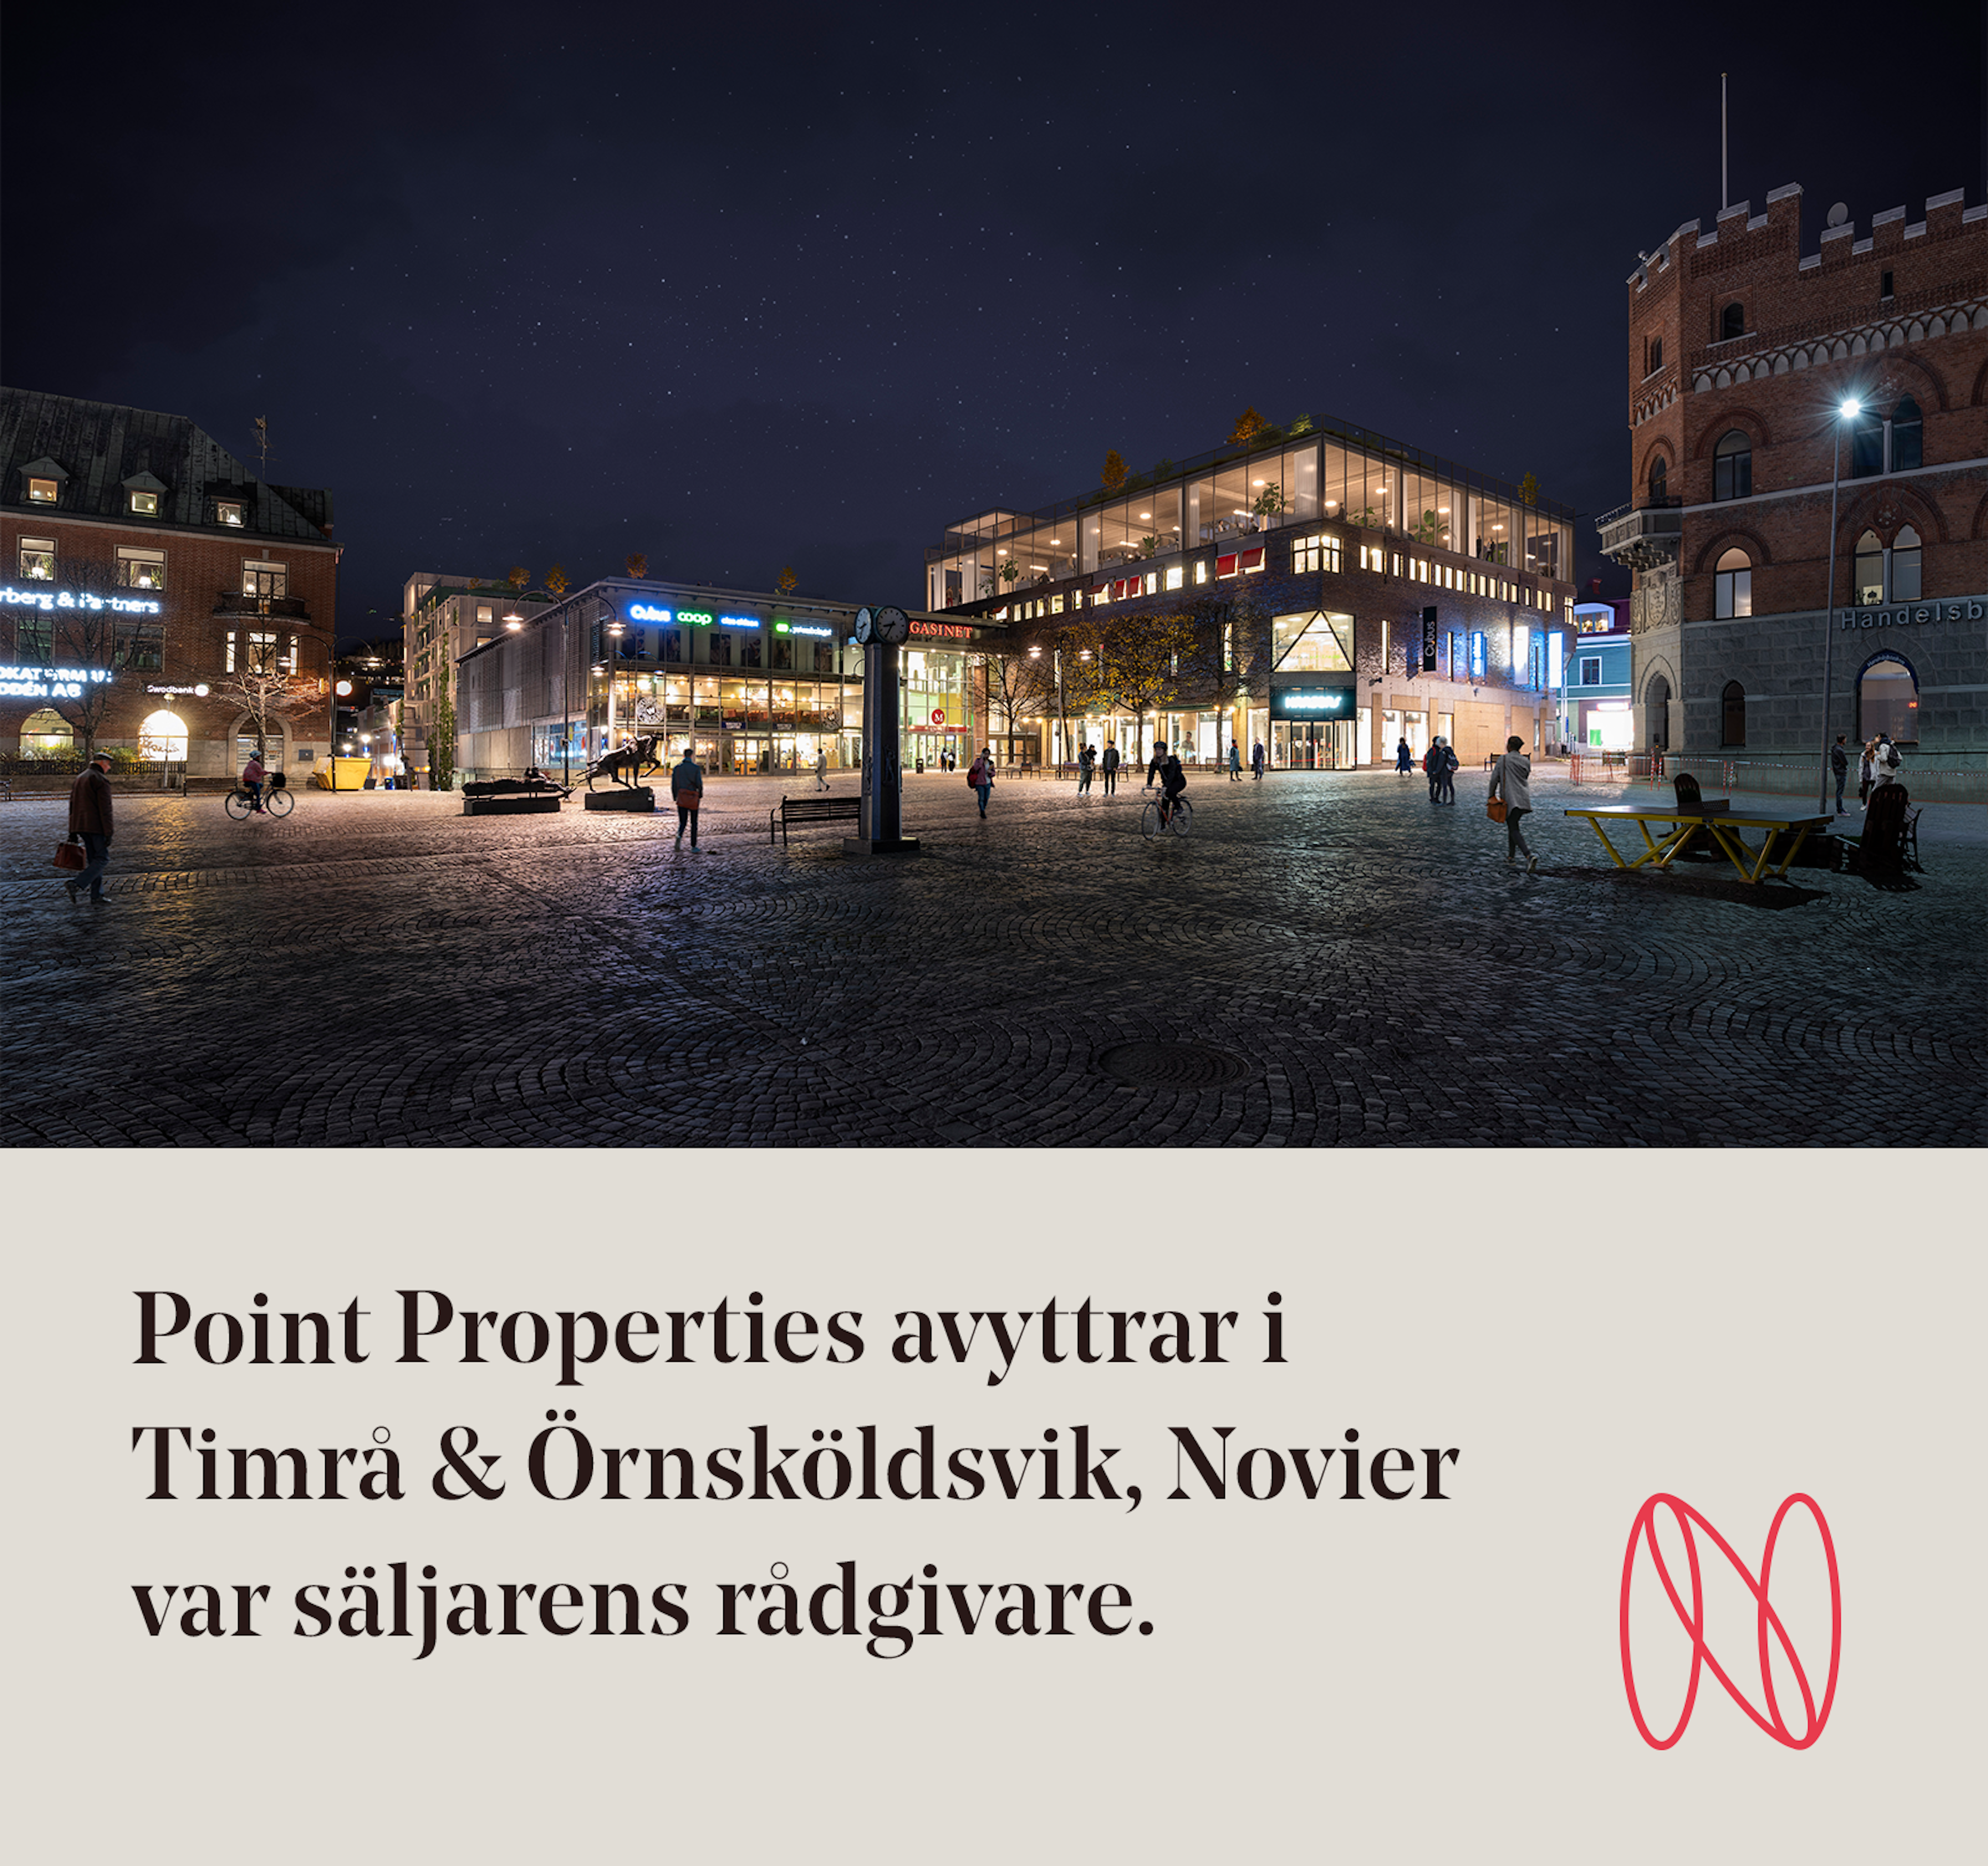 Referensaffärer: Point Properties avyttrar i Timrå & Örnsköldsvik